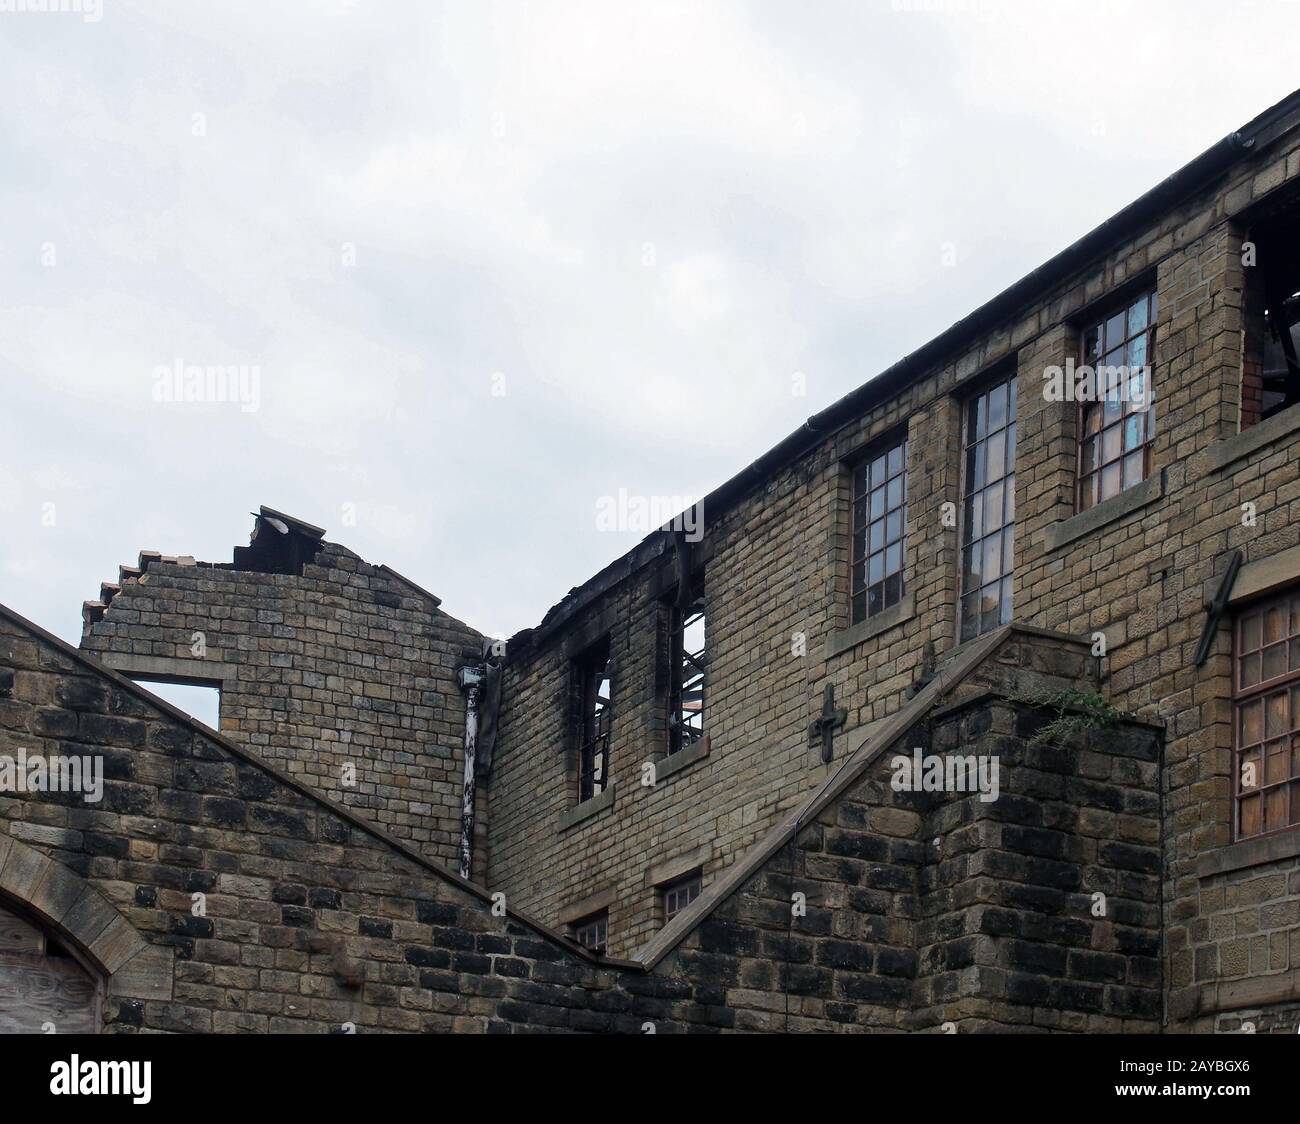 un vieux bâtiment industriel abandonné ruiné avec des fenêtres cassées incendiées qui s'effondrent les murs Banque D'Images